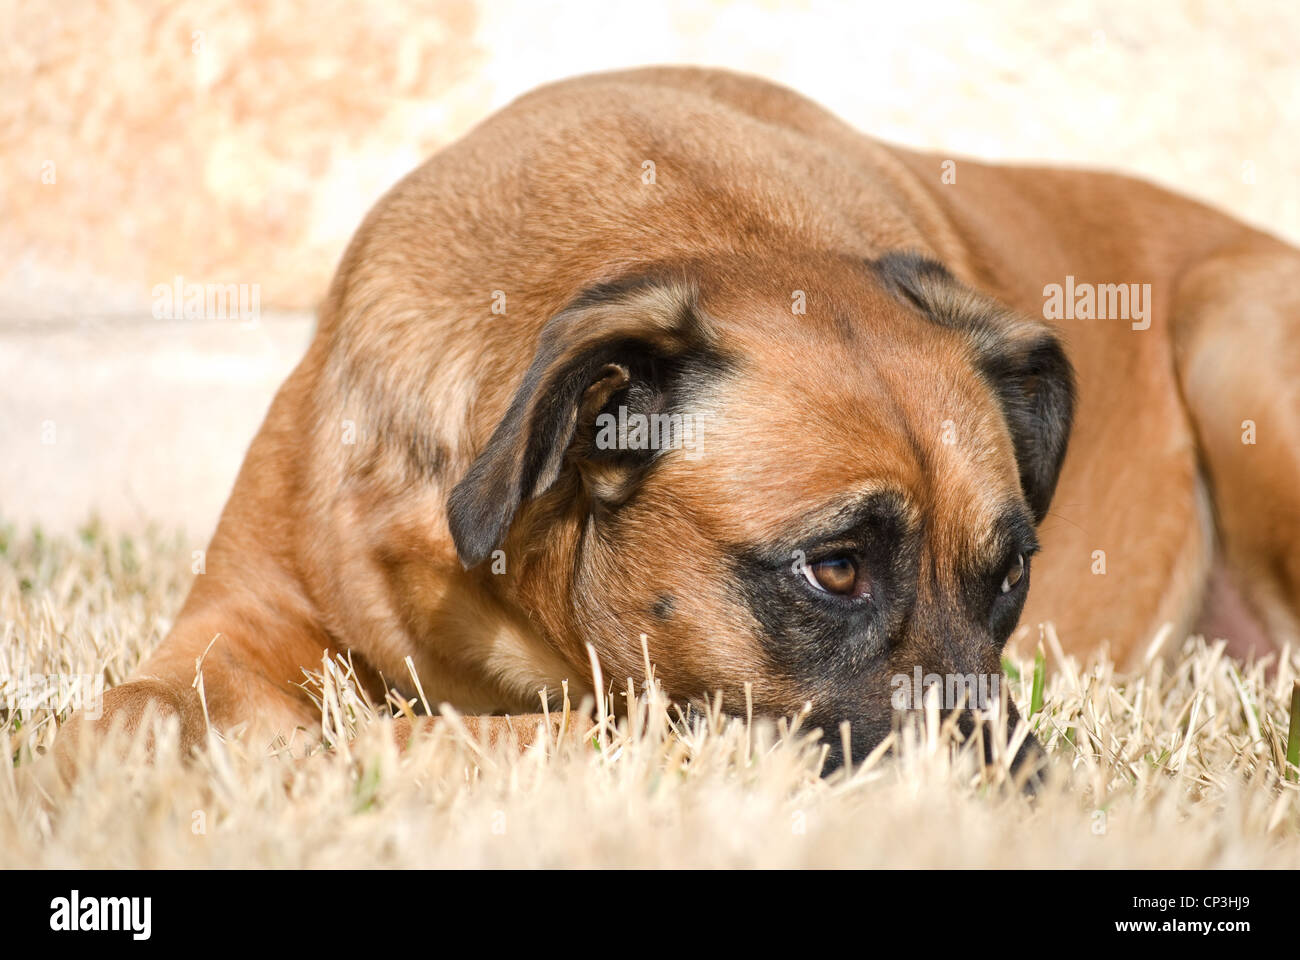 Dog With Sheepish Expression Stock Photo